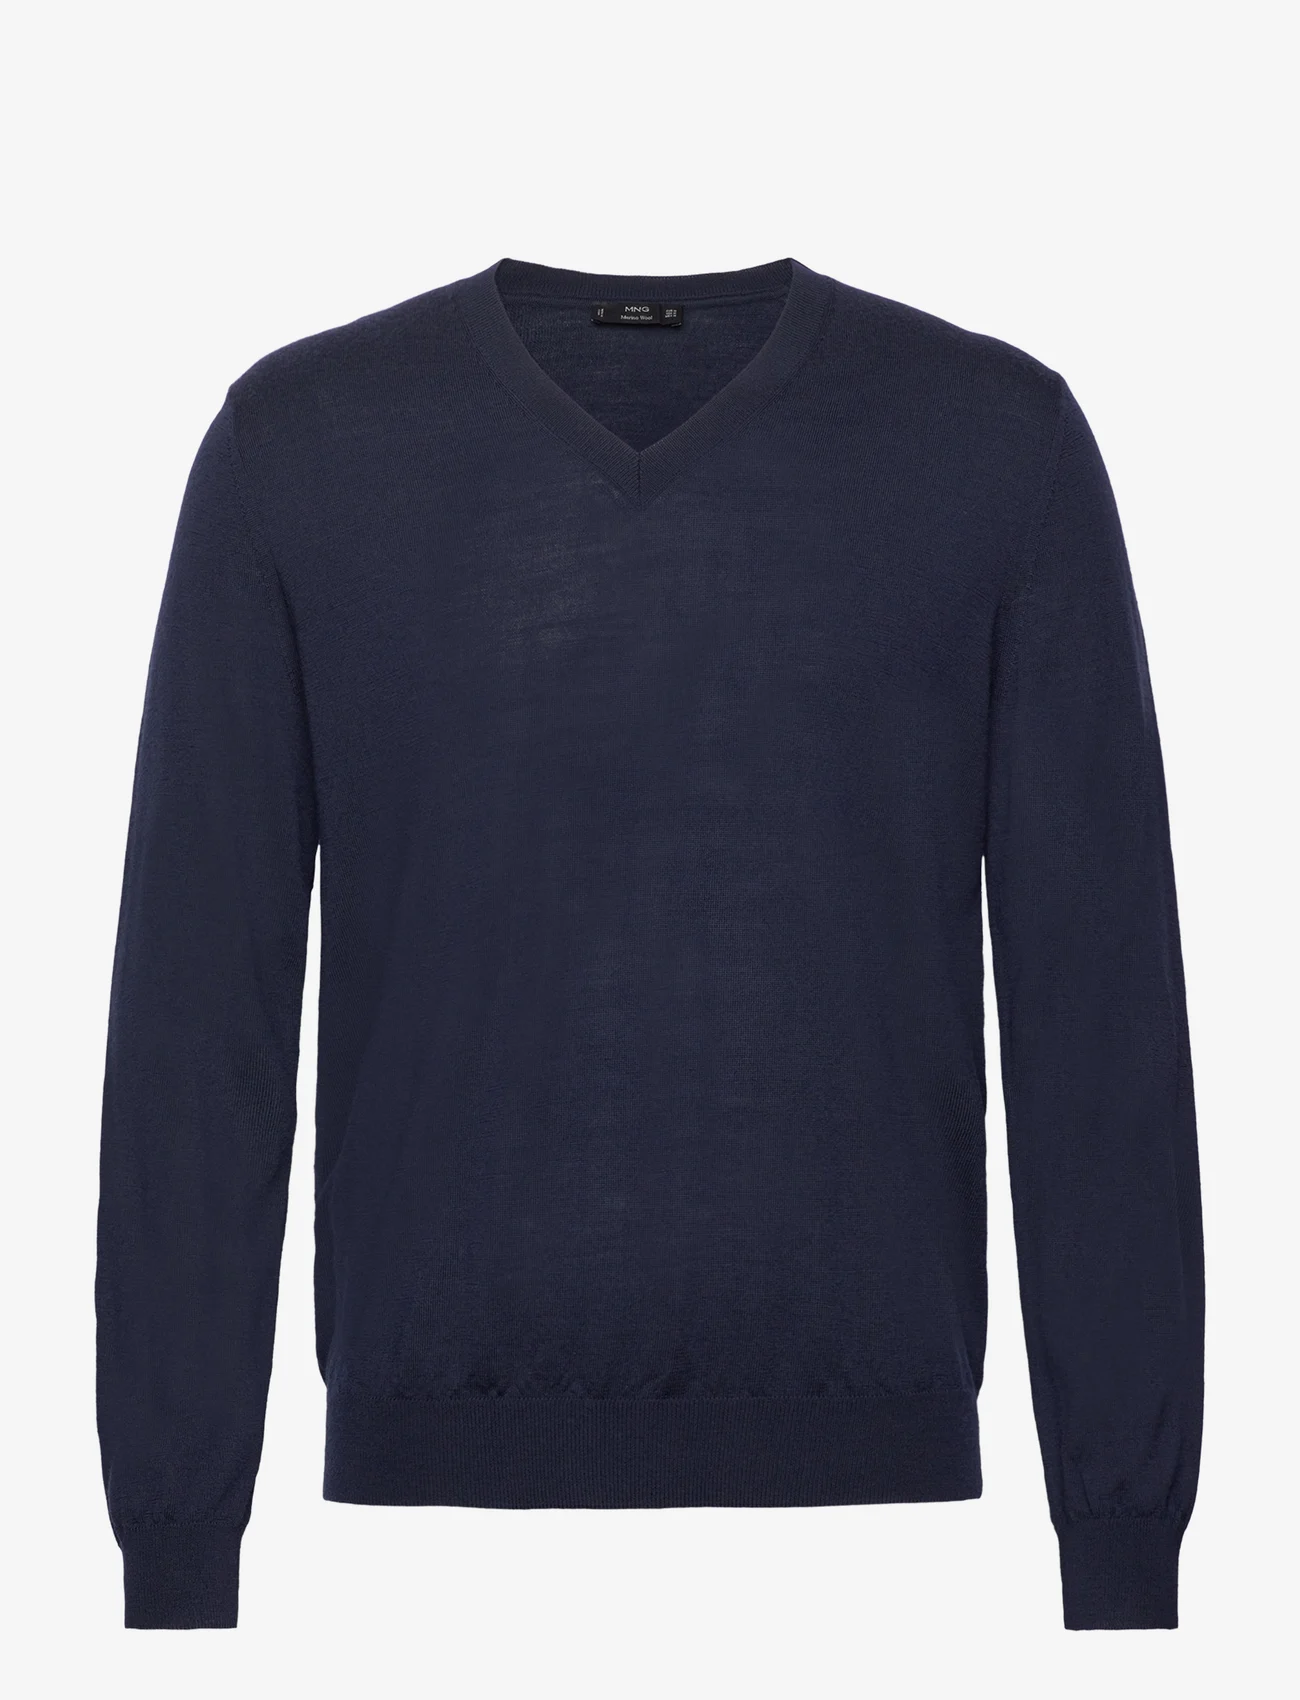 Mango - 100% merino wool V-neck sweater - v-hals - navy - 0